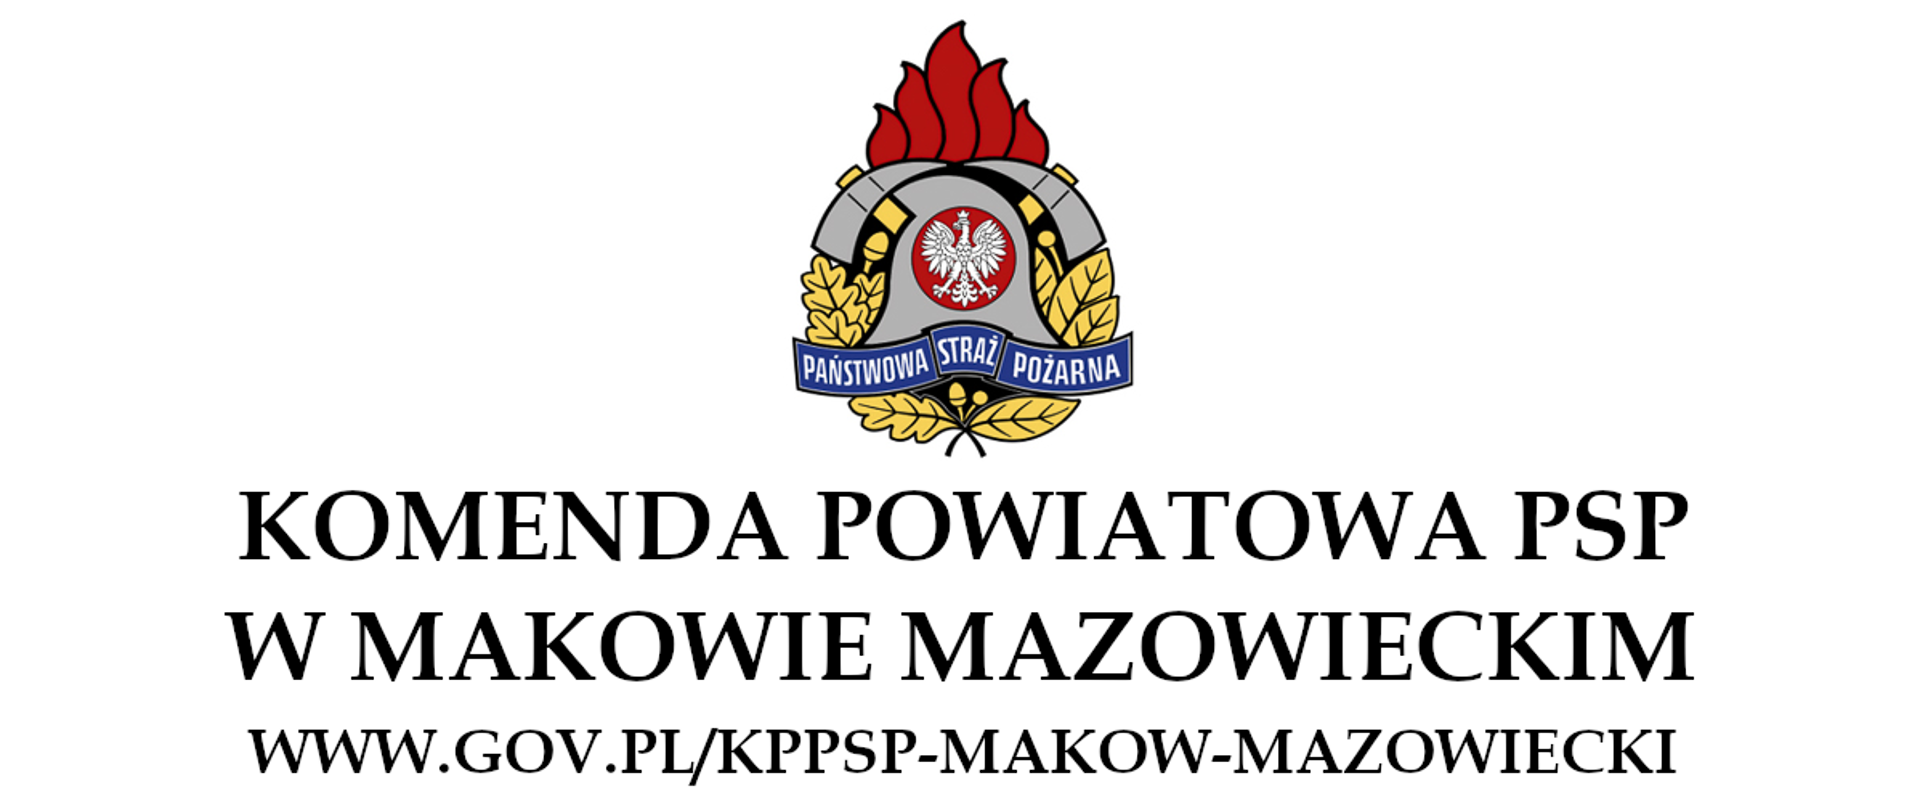 Logo PSP na białym tle razem z nazwą Komendy oraz adresem strony